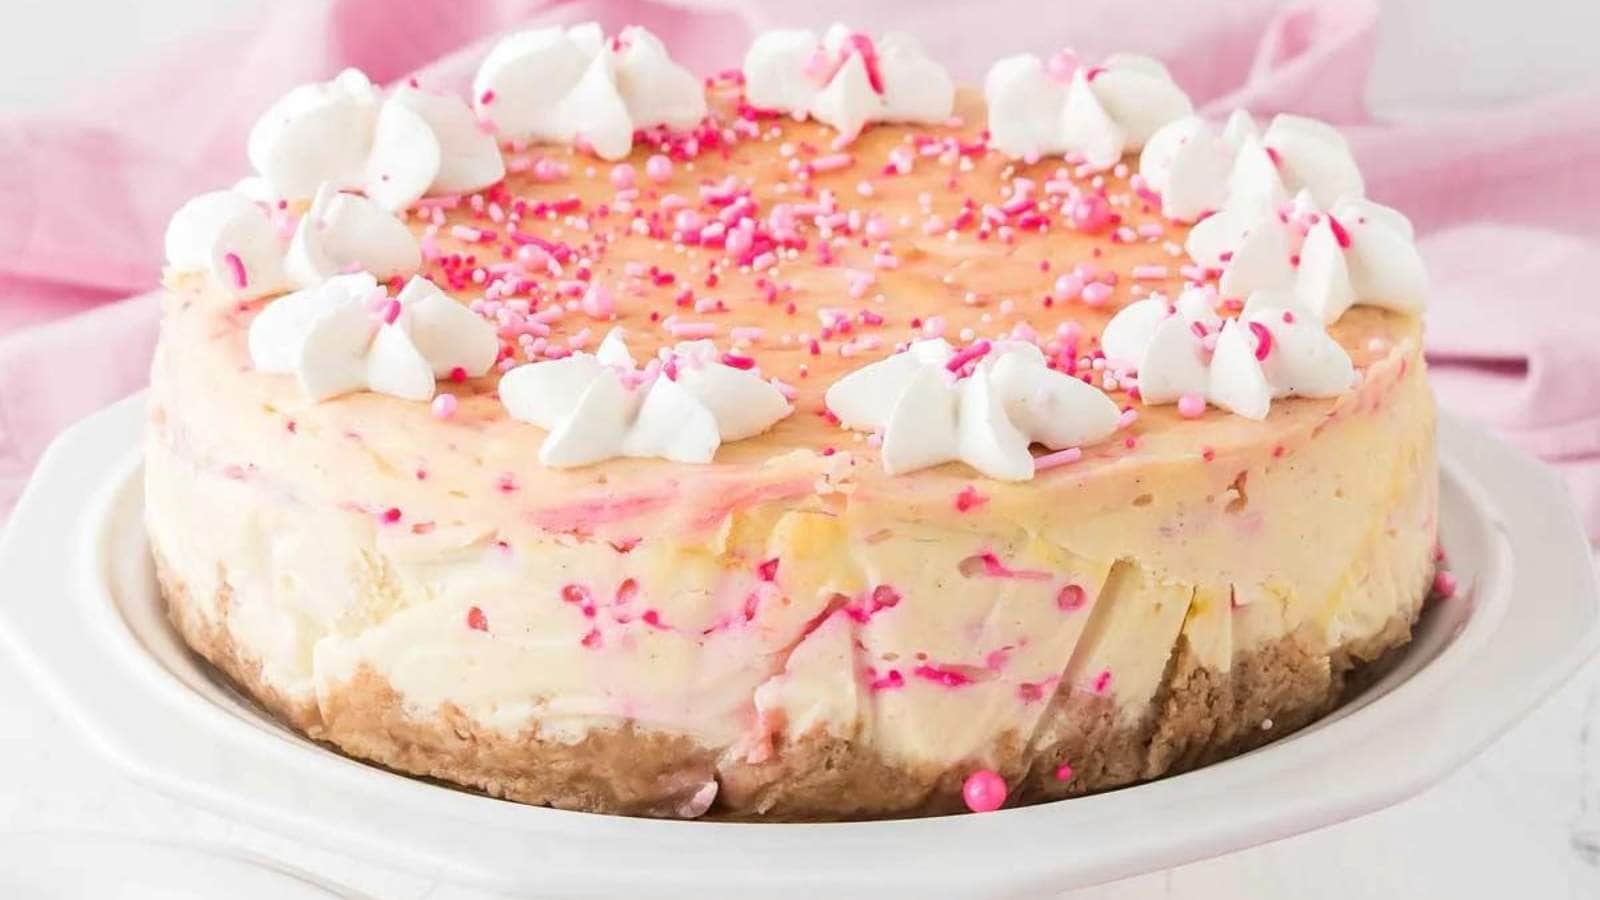 Funfetti Birthday Cheesecake recipe by XOXO Bella.